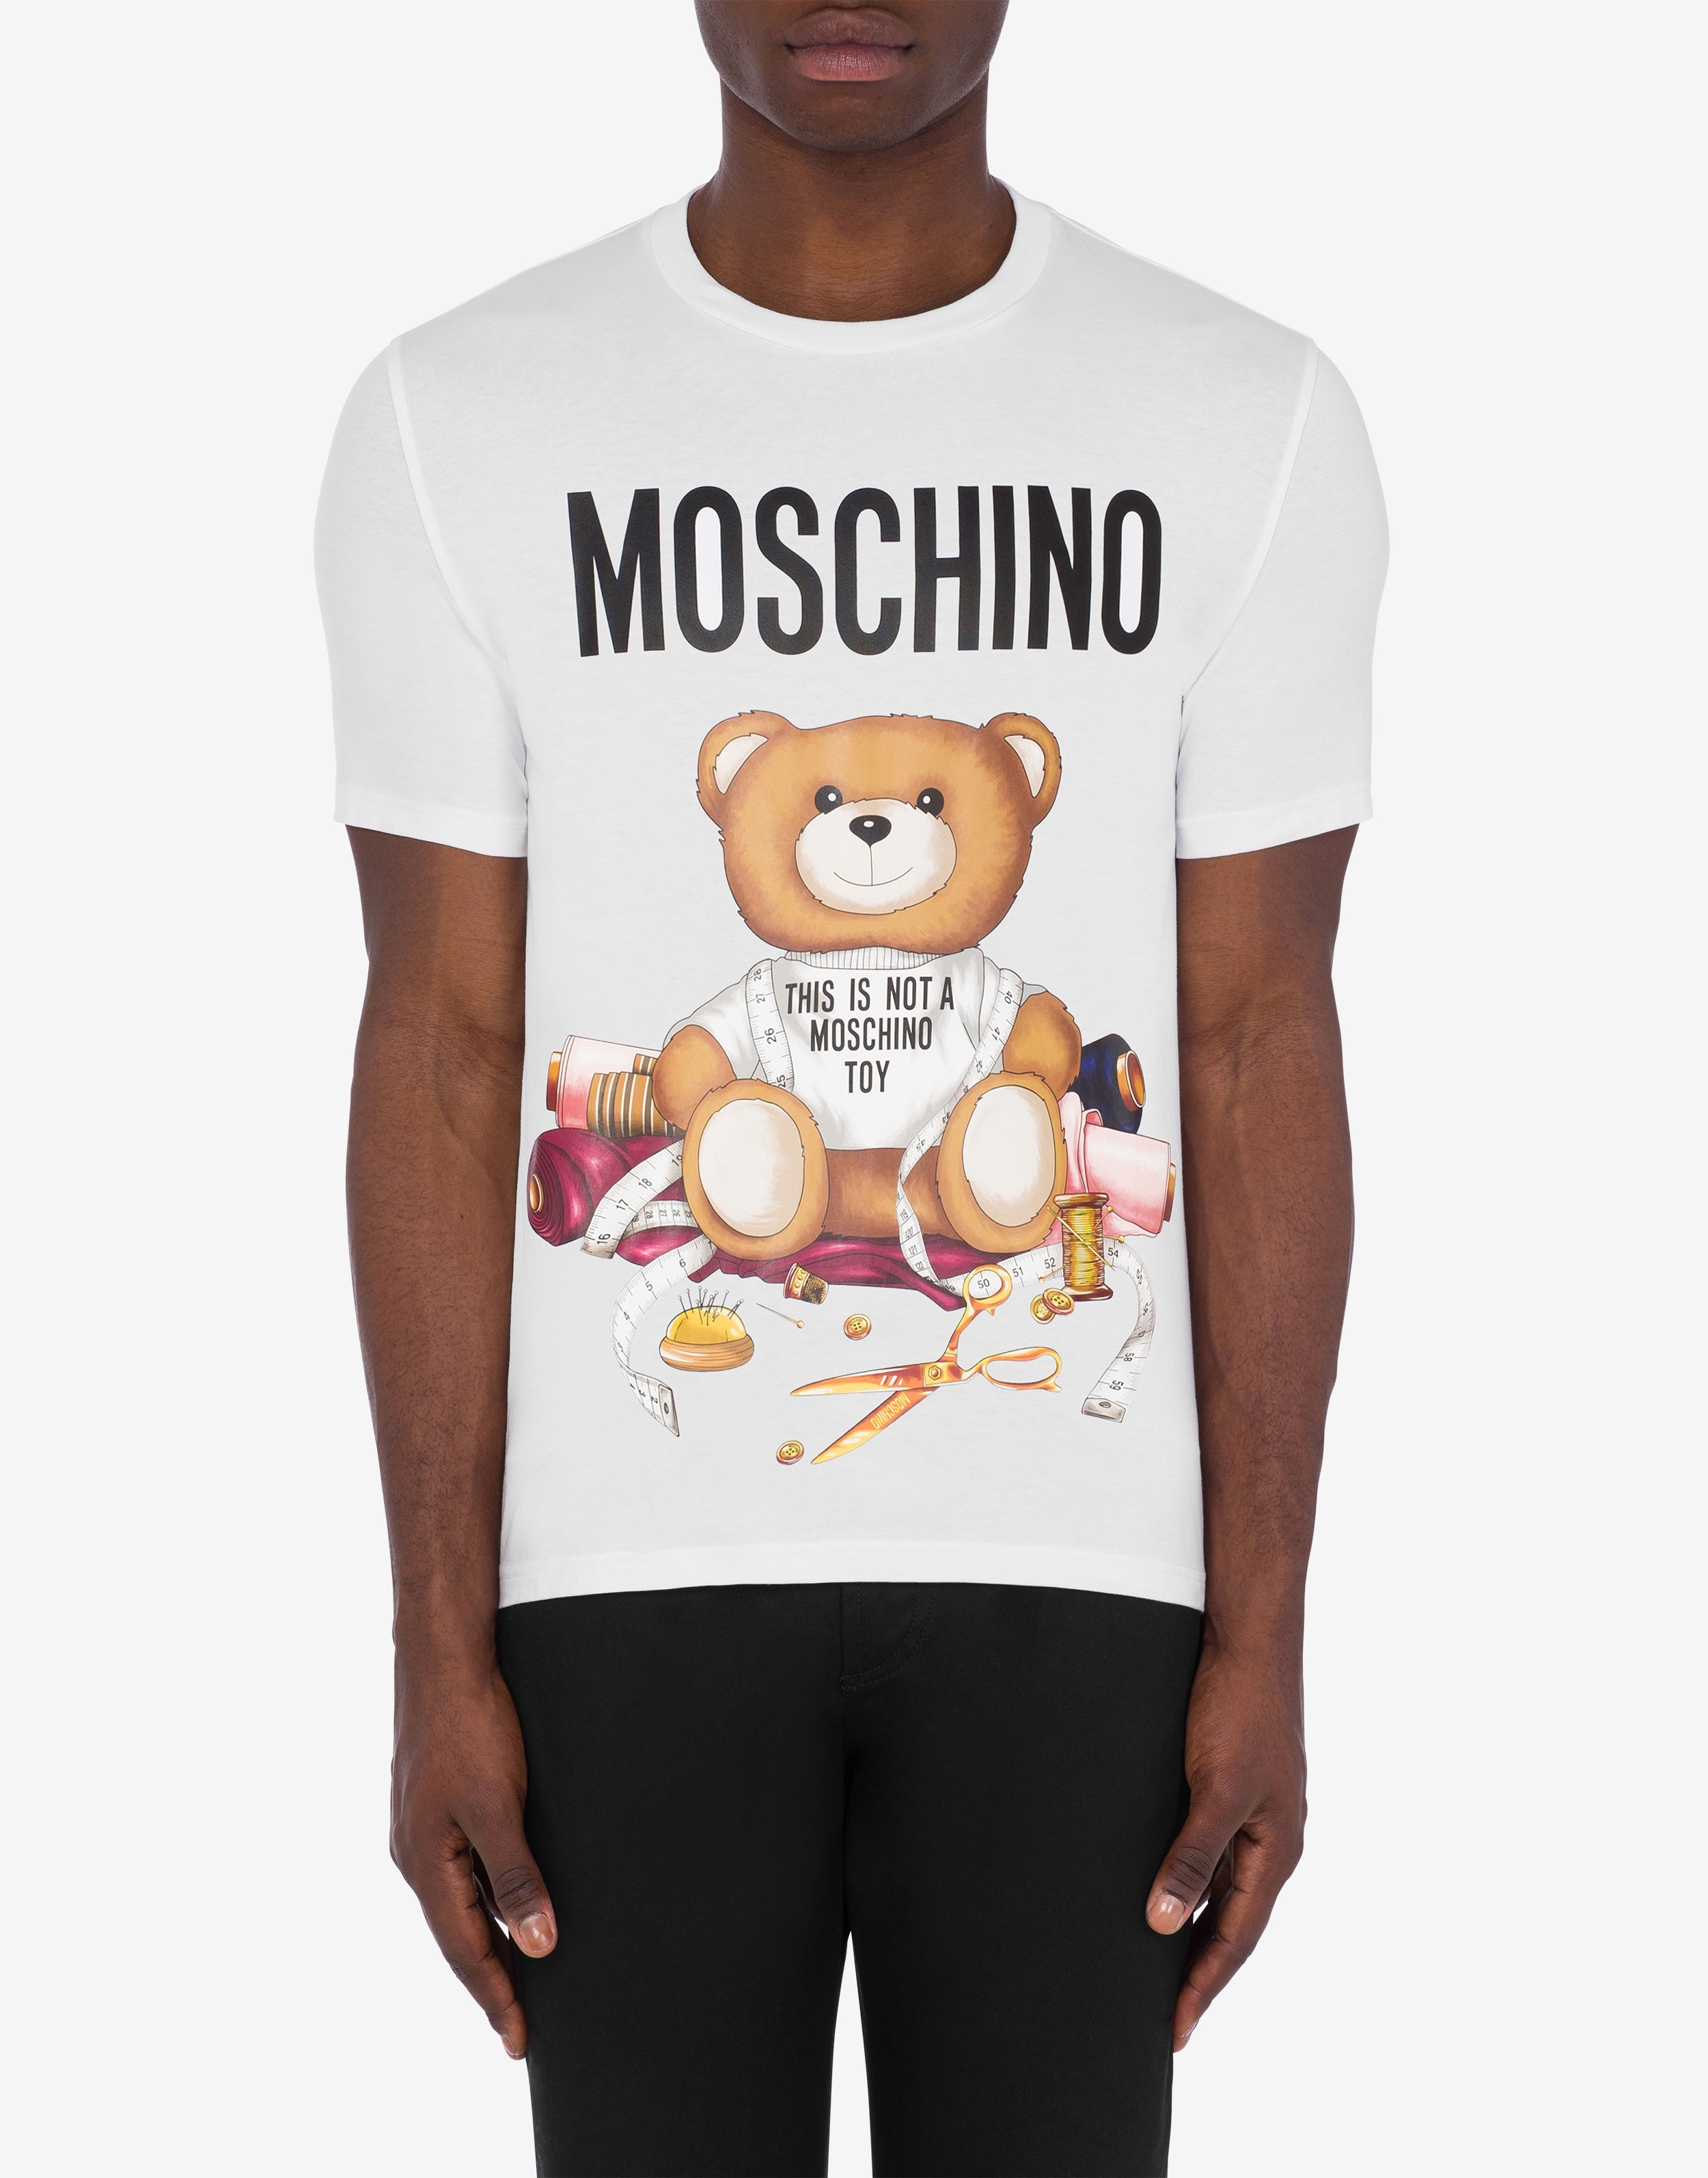  MOSCHINO Camiseta Hombre Teddy Bear Blanco, Blanco : Ropa,  Zapatos y Joyería